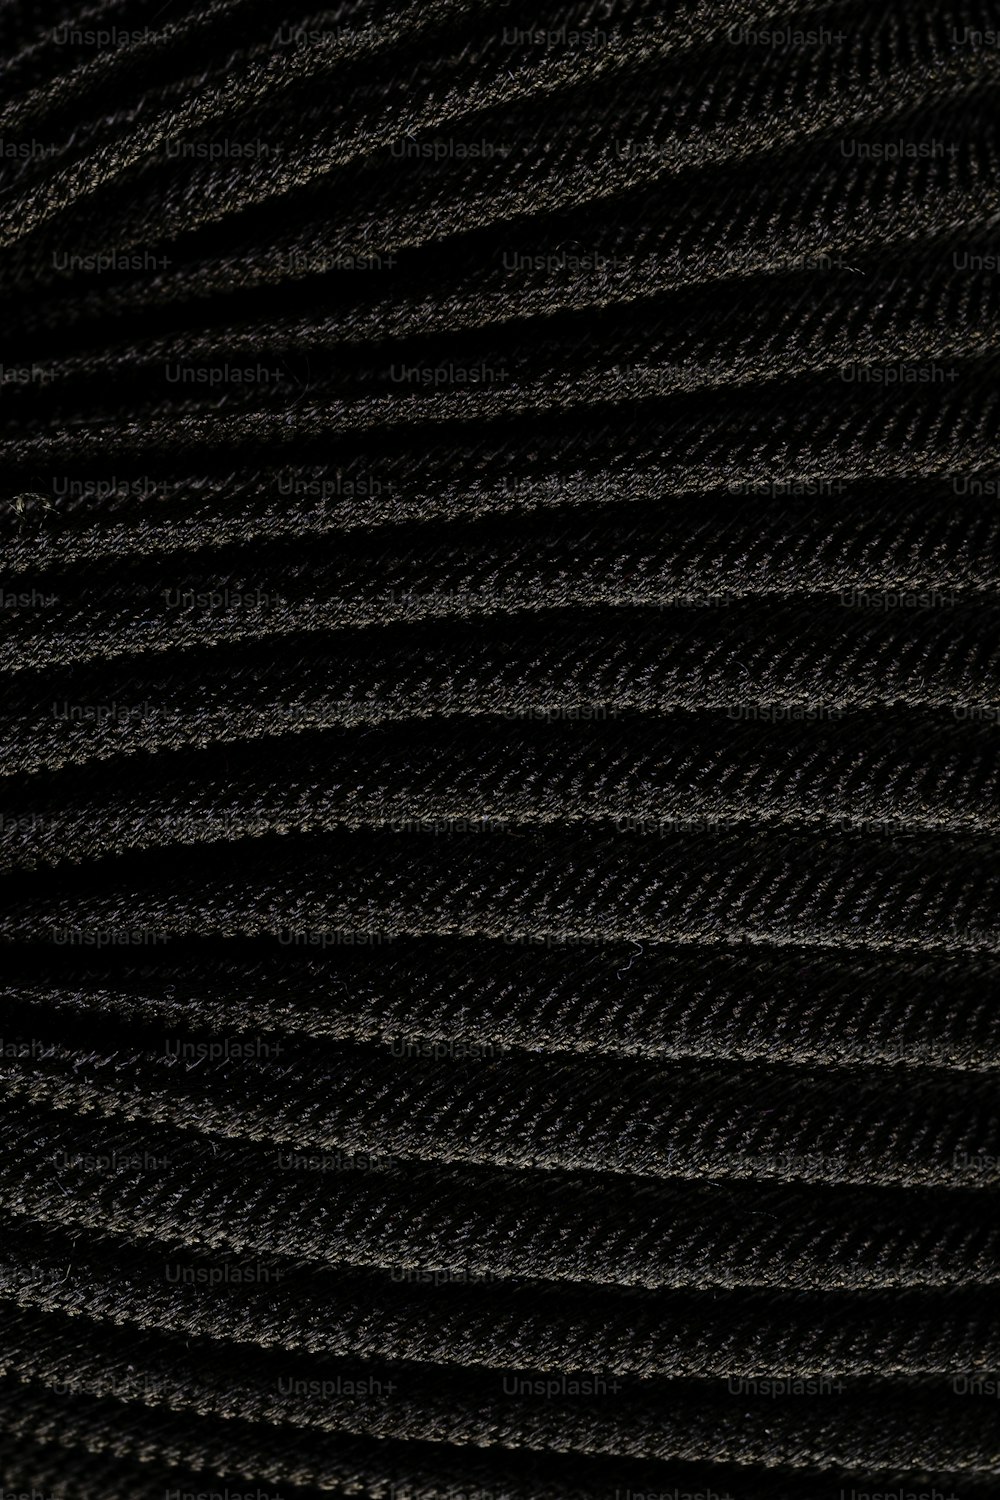 Un primer plano de una textura de tela negra